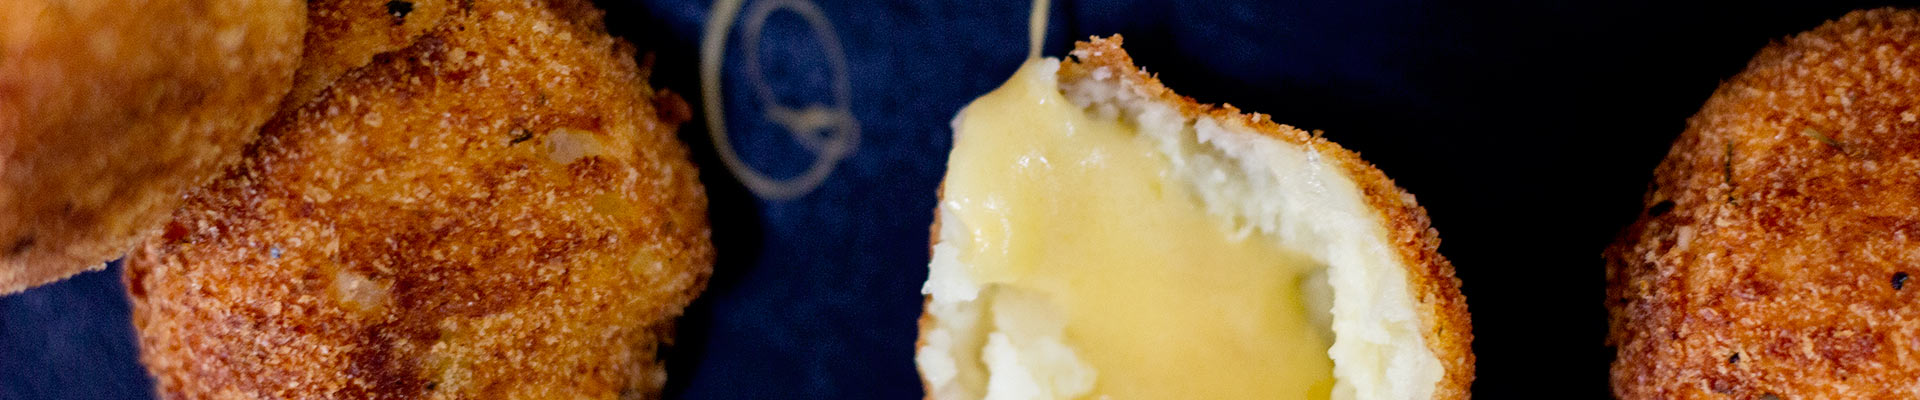 cheese-stuffed-mashed-potato-balls